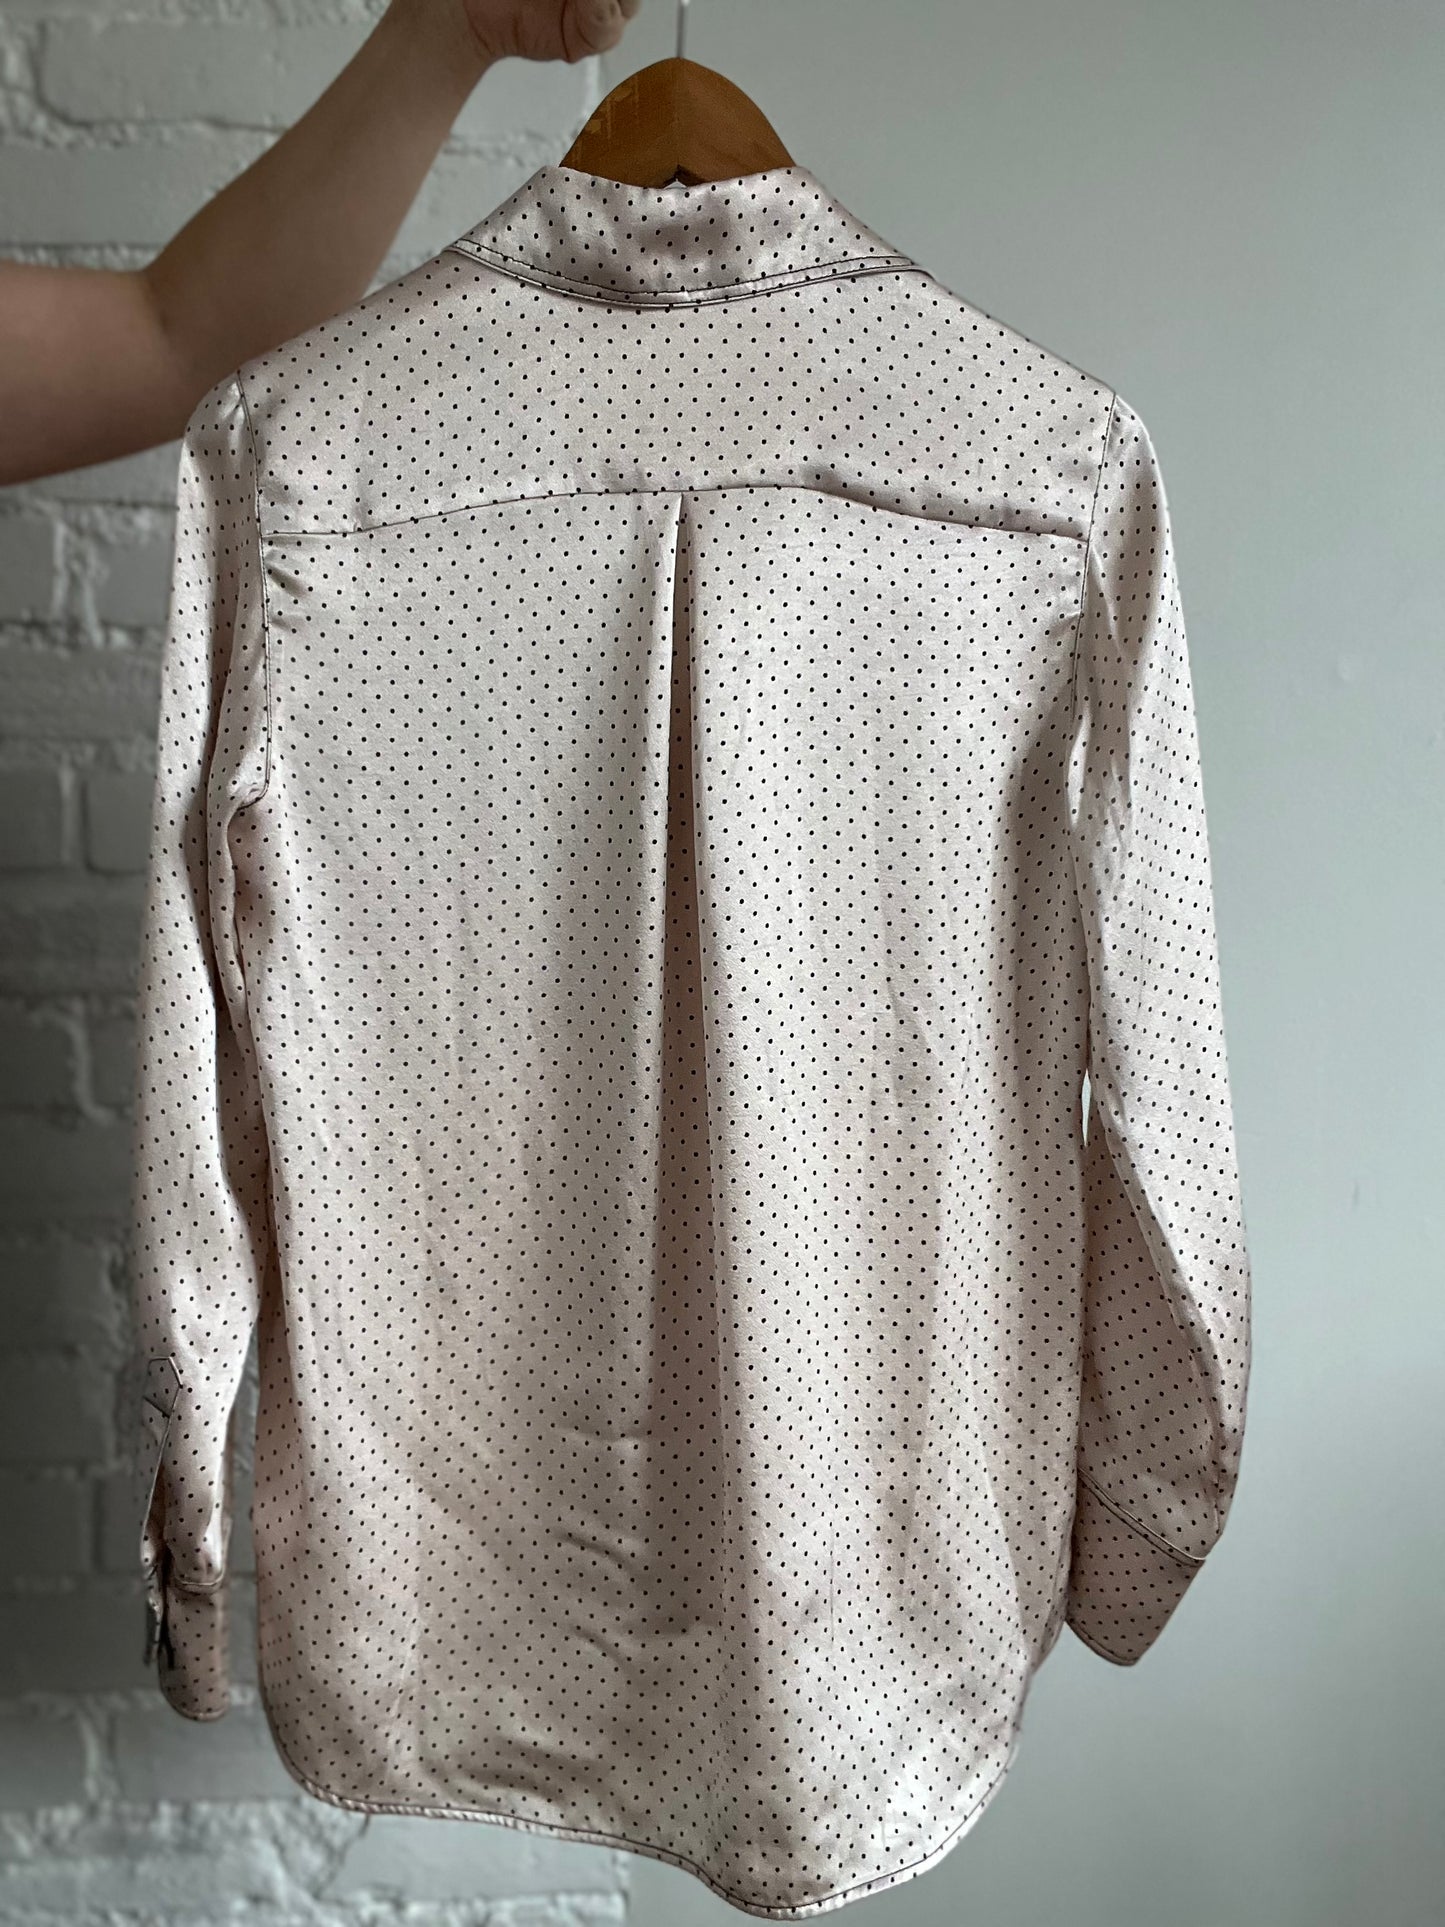 Satin Polka Dot Shirt - Size 2